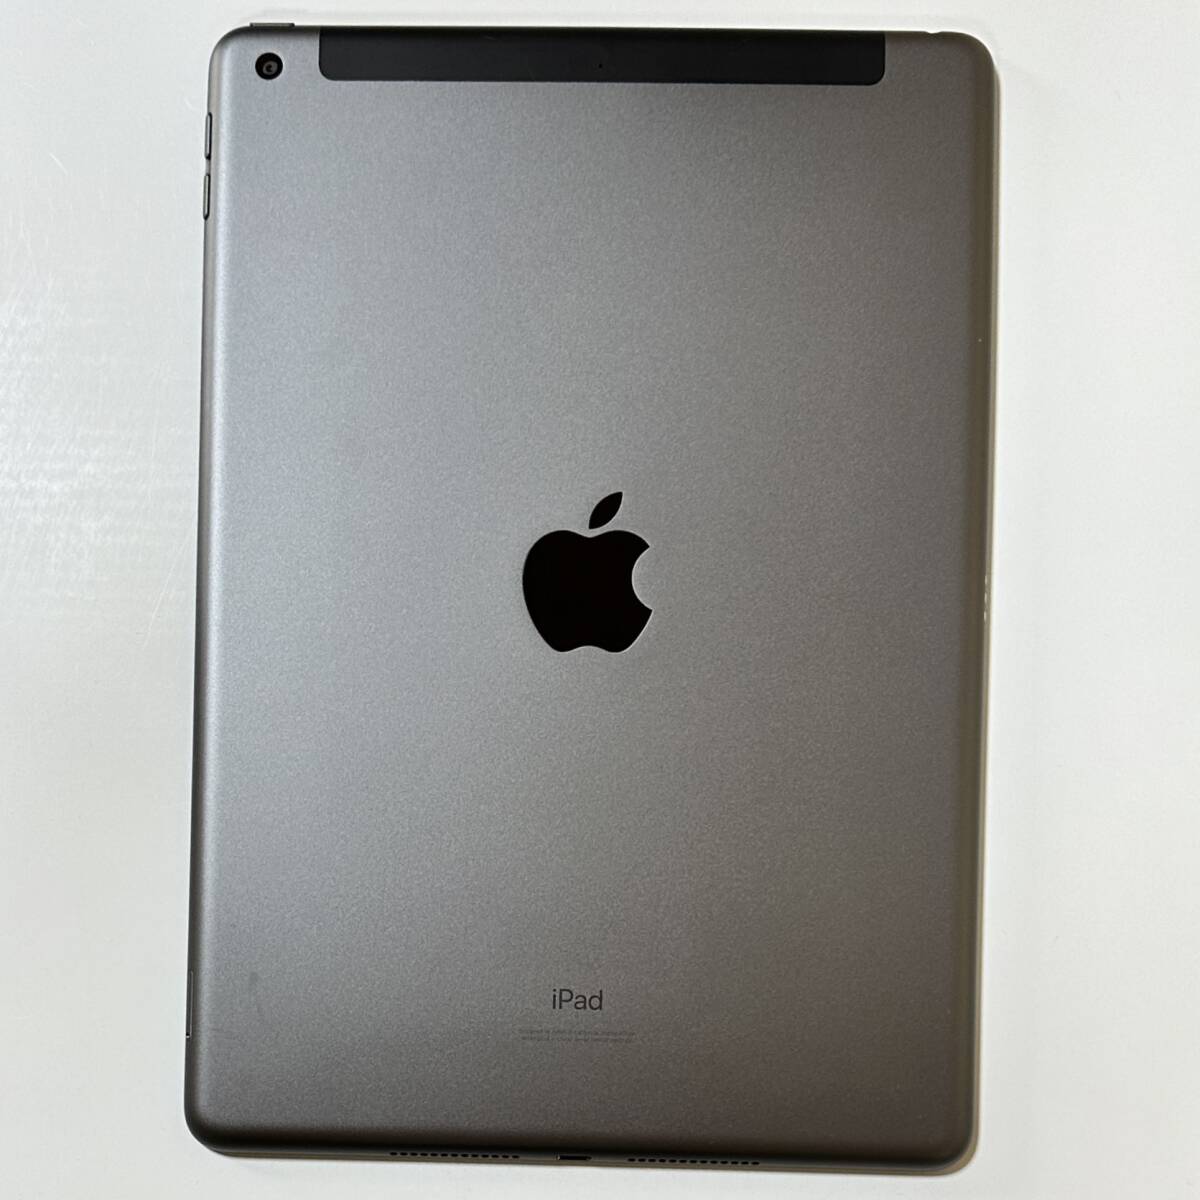 Apple SIM свободный iPad ( no. 8 поколение ) Space серый 32GB MYMH2J/A Wi-Fi+Cellular Acty беж .n разблокирован 